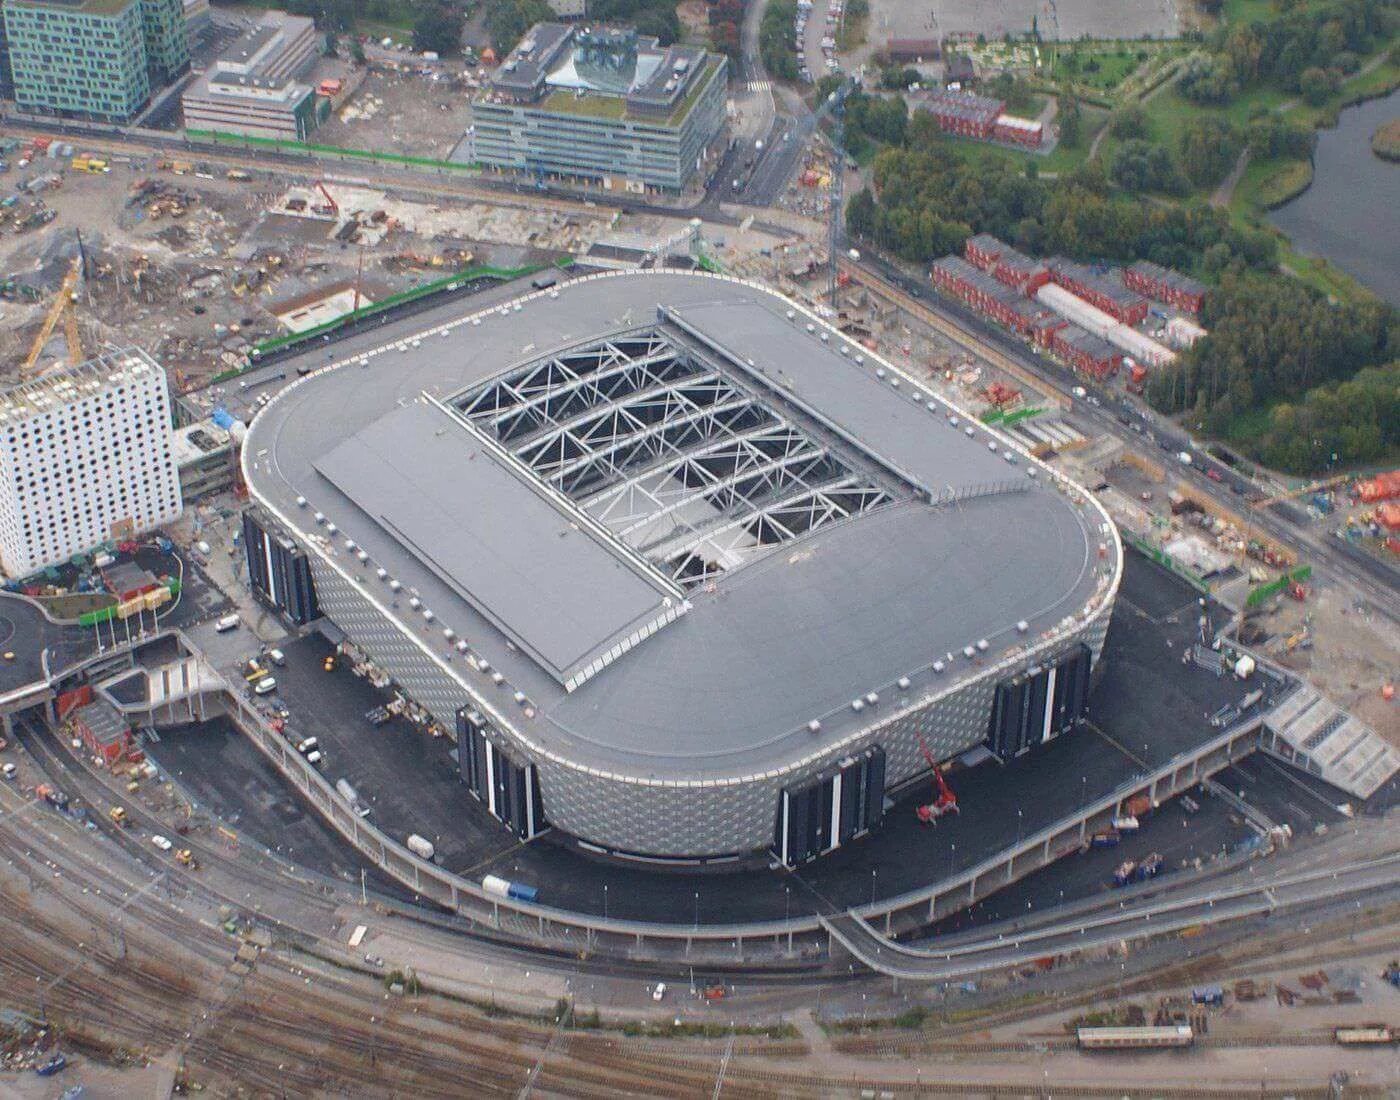 Френдс Арена Стокгольм. Френдс Арена стадион. Стадион в Стокгольме. Футбольный стадион в Стокгольме.